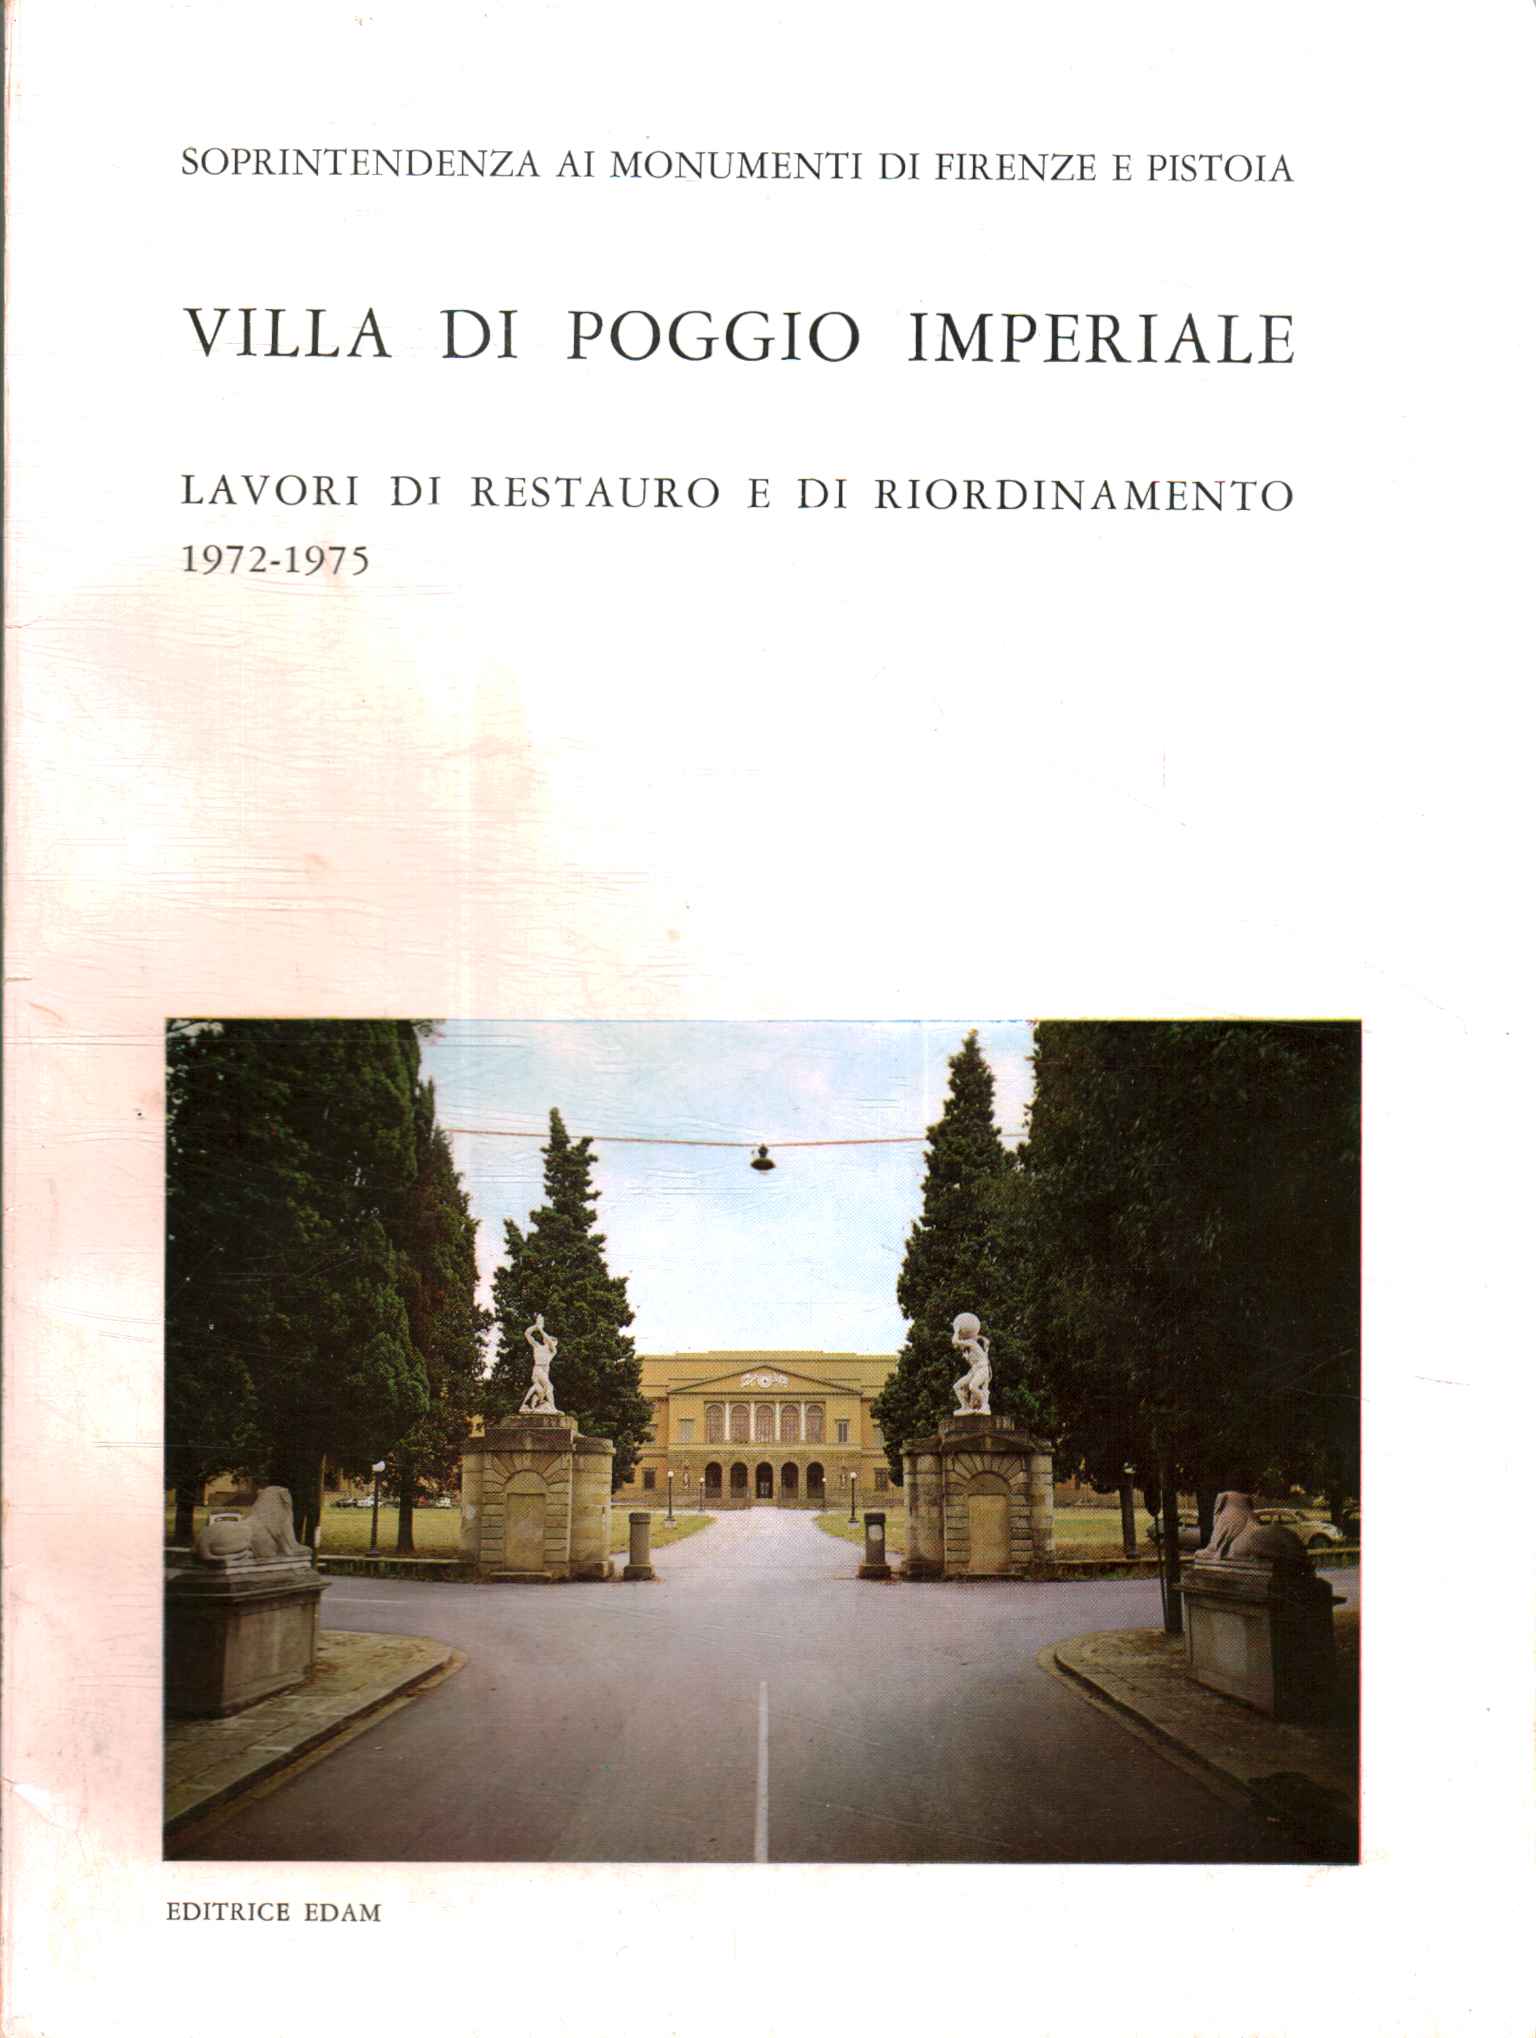 Villa of Poggio Imperiale